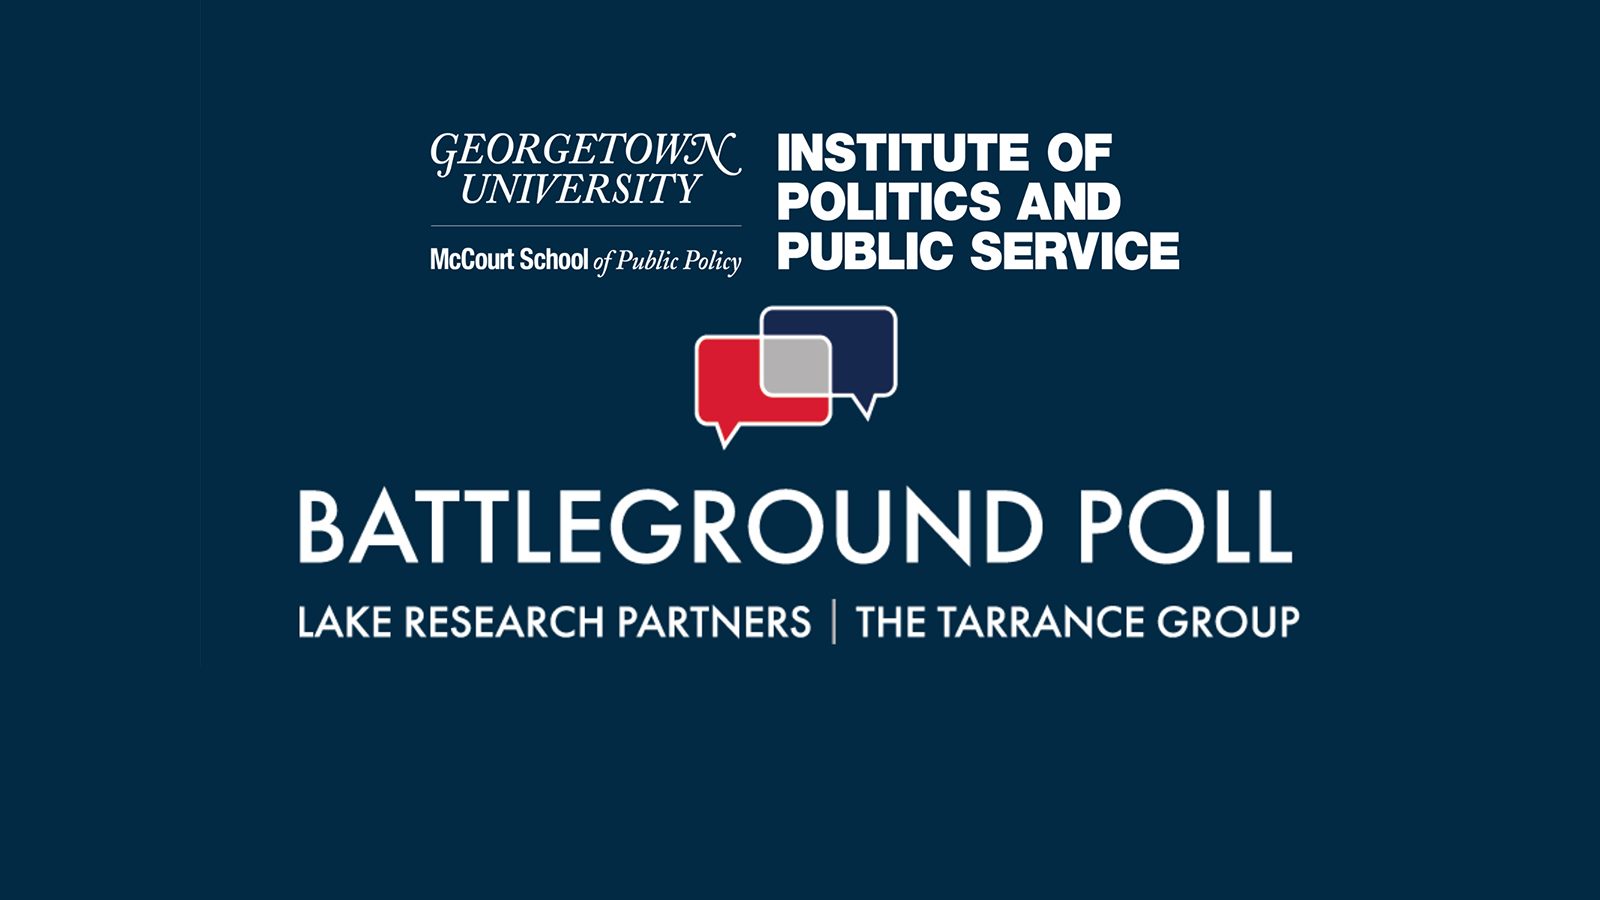 Battleground Poll logo &amp; GU Politics logo